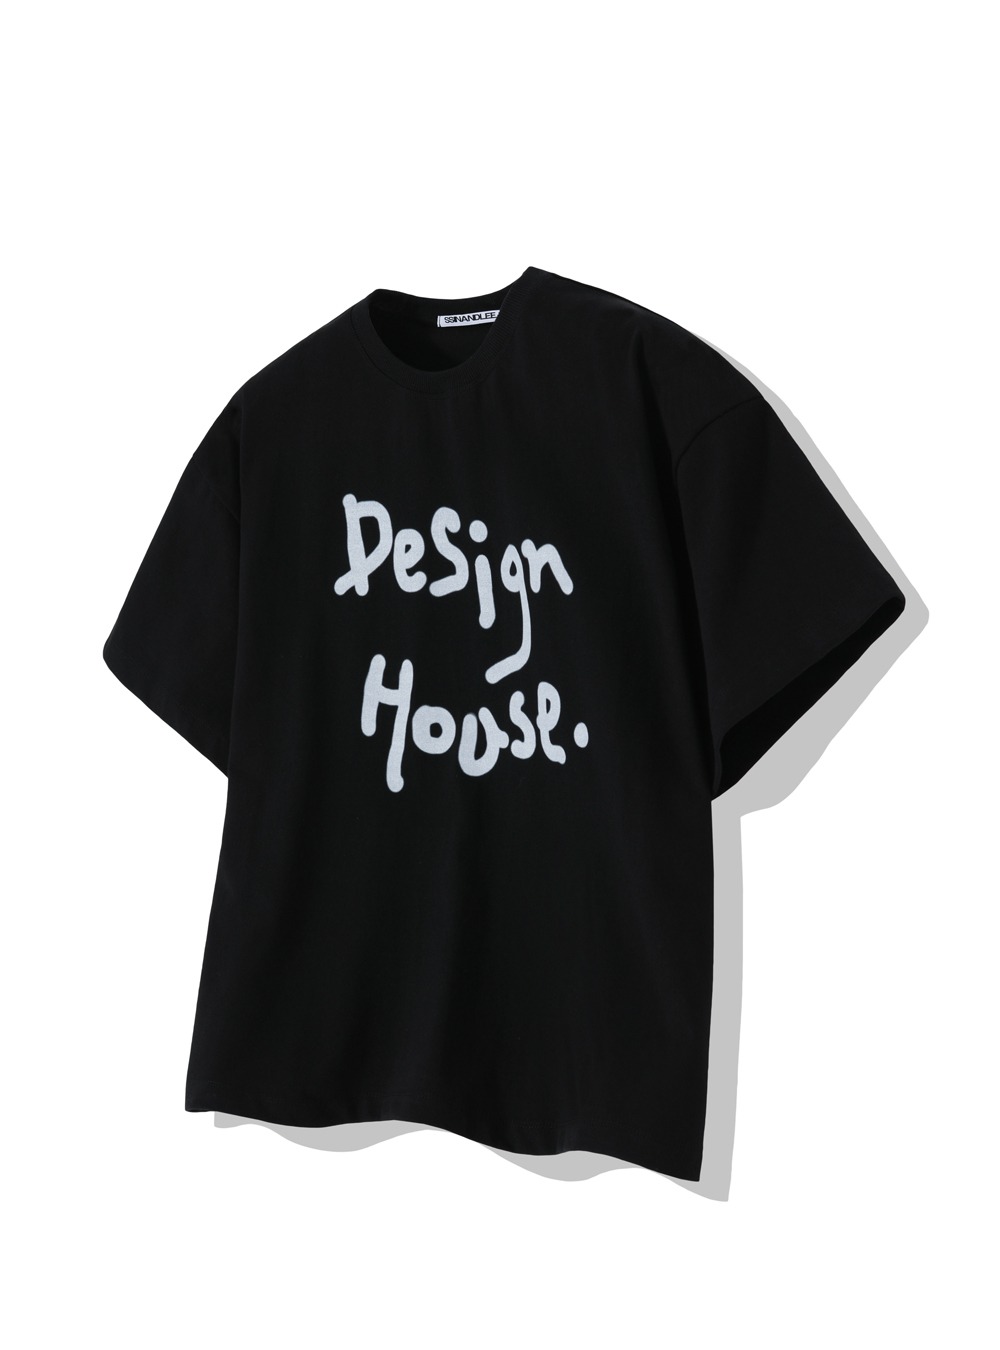 퓨어 디자인 하우스 티셔츠 블랙Pure design house black